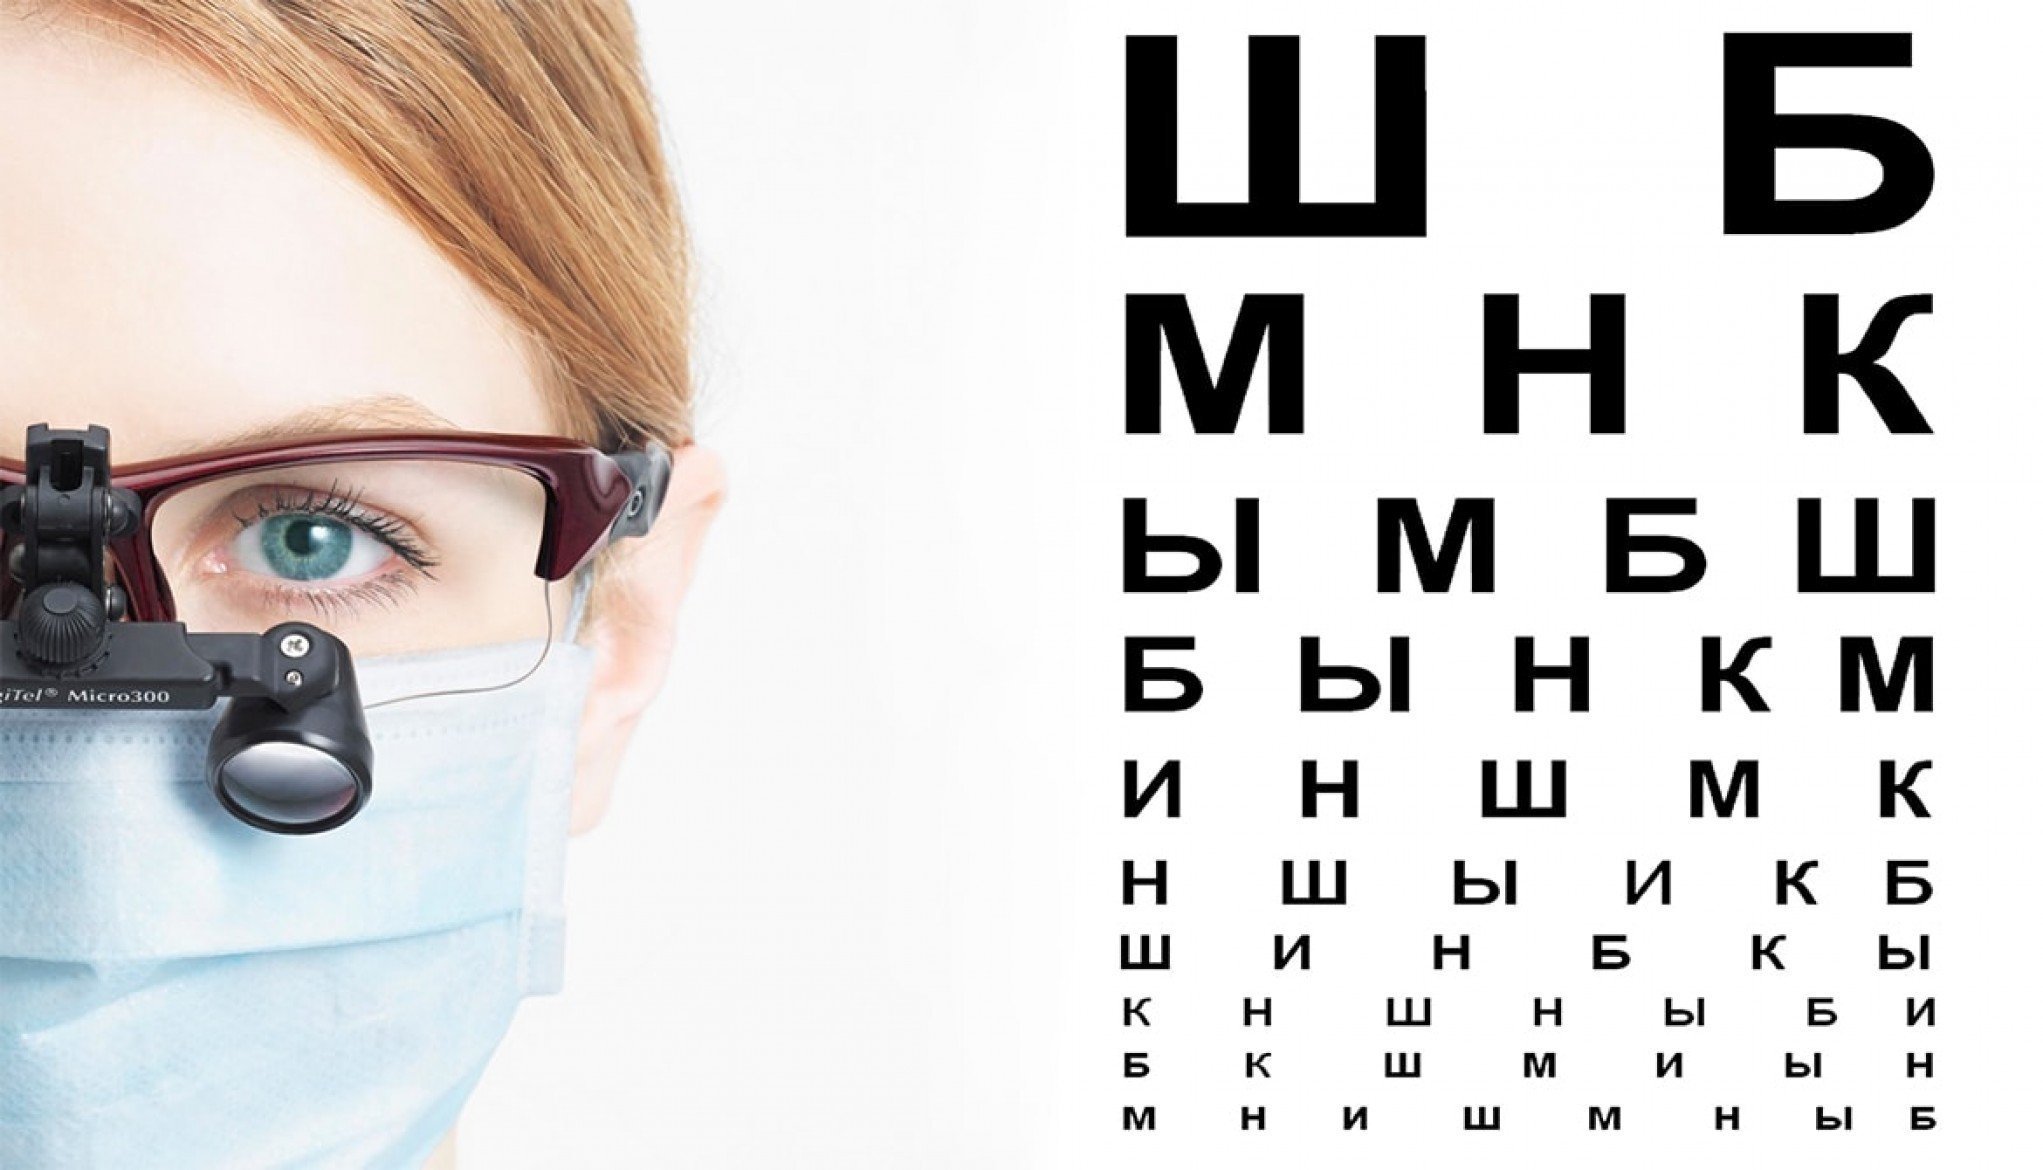 Врач зрение очки. Очки офтальмолога. Очки для глаз для зрения. Очки офтальмологические для проверки зрения. Человек у офтальмолога.